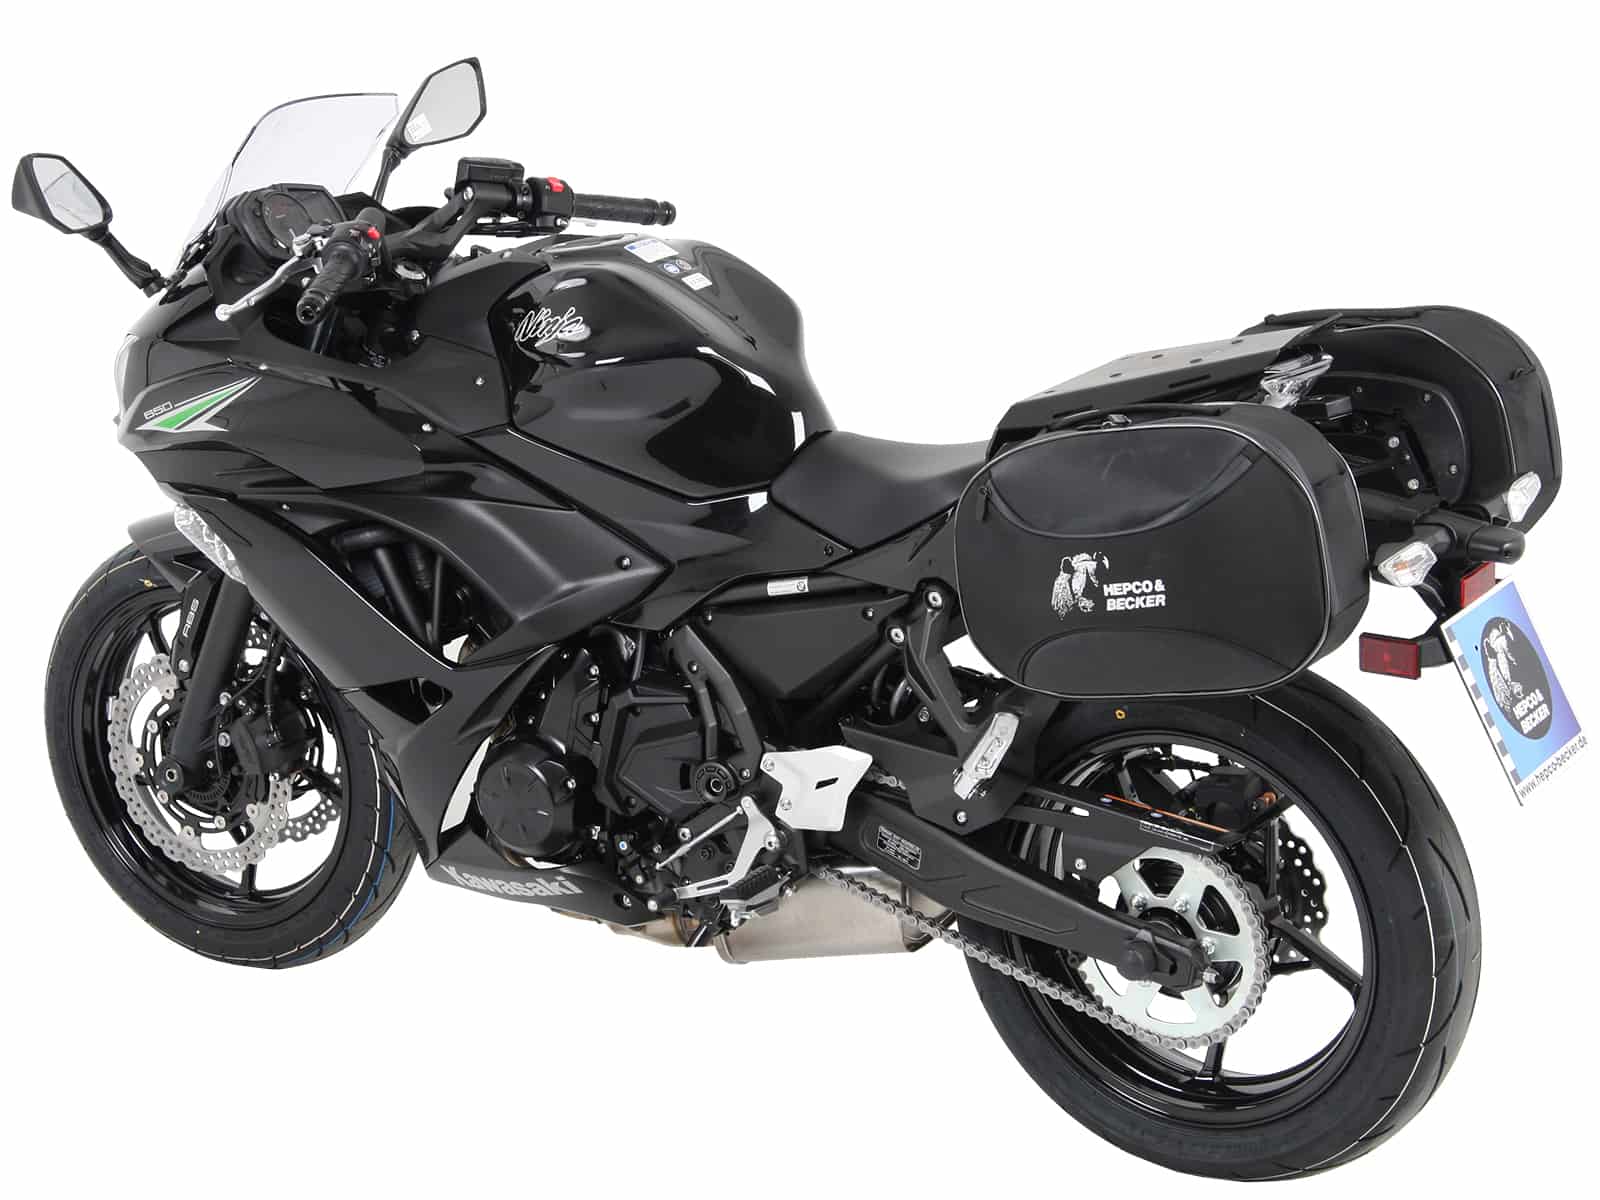 L Motorcycle Cover Protector For Kawasaki Ninja ZX EX 250 300 600 750 900 1000